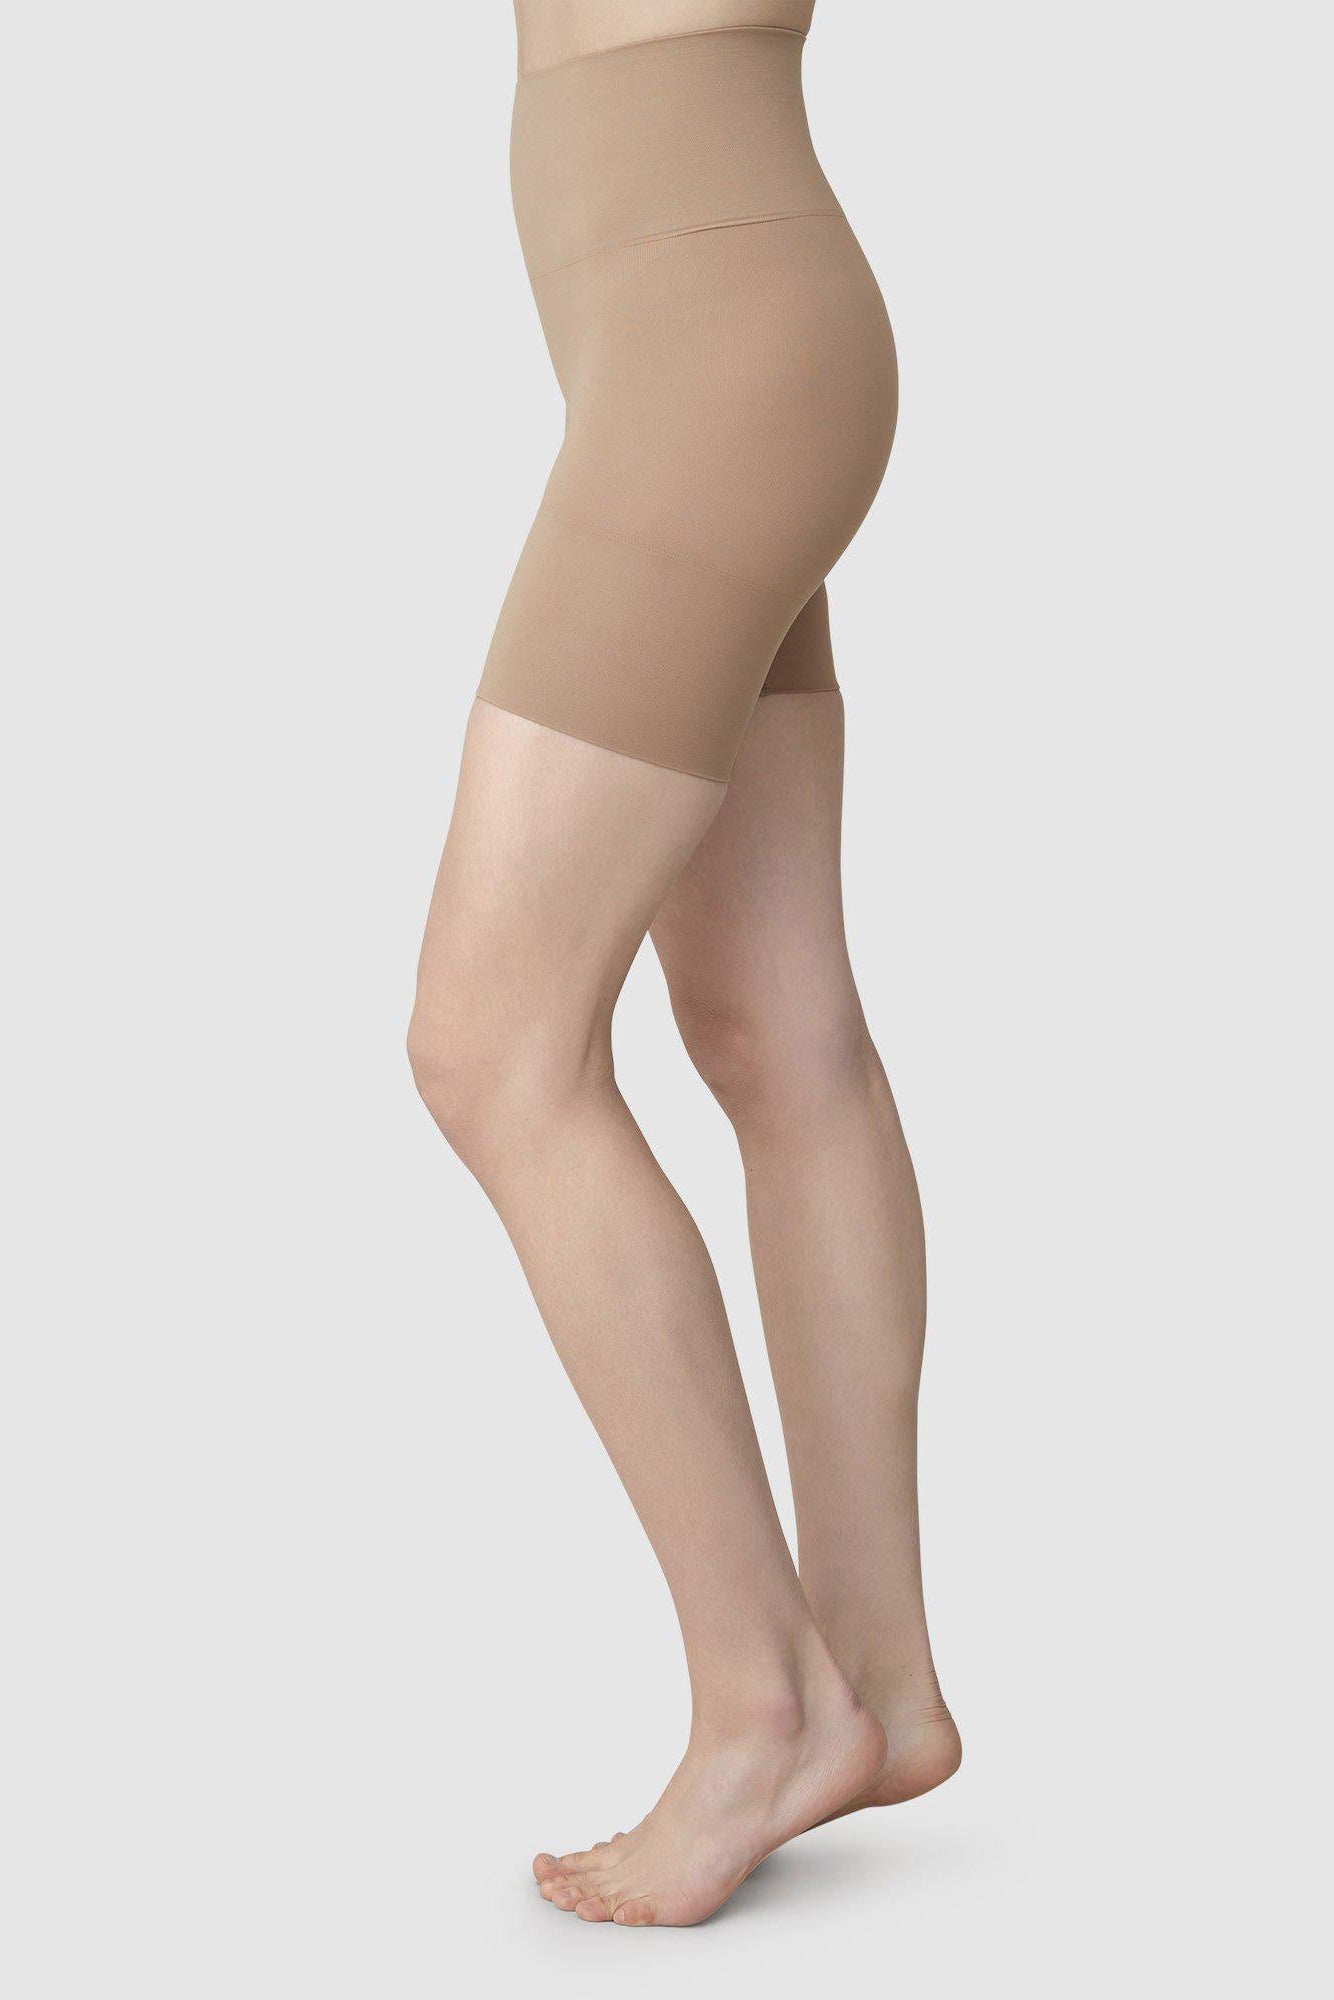 Swedish Stockings Livia Seamless Shaping Shorts - Beige - RUM Amsterdam